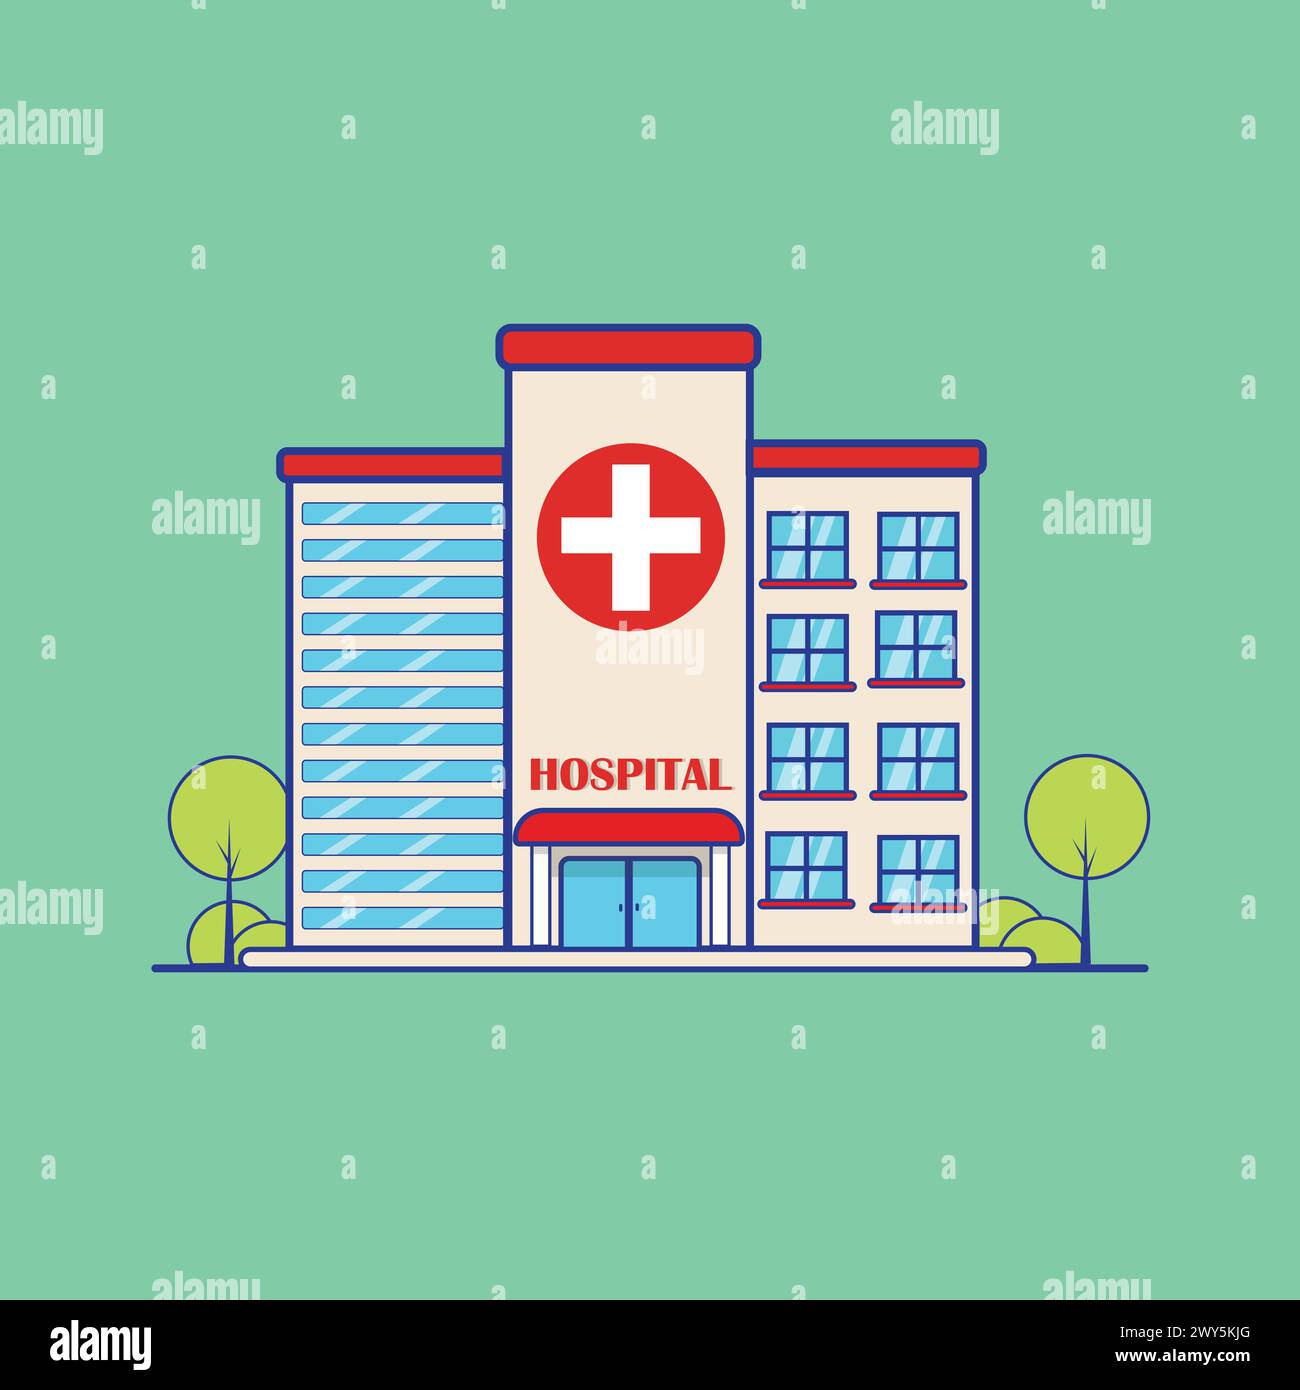 Hospital Building Illustration Stock Vector